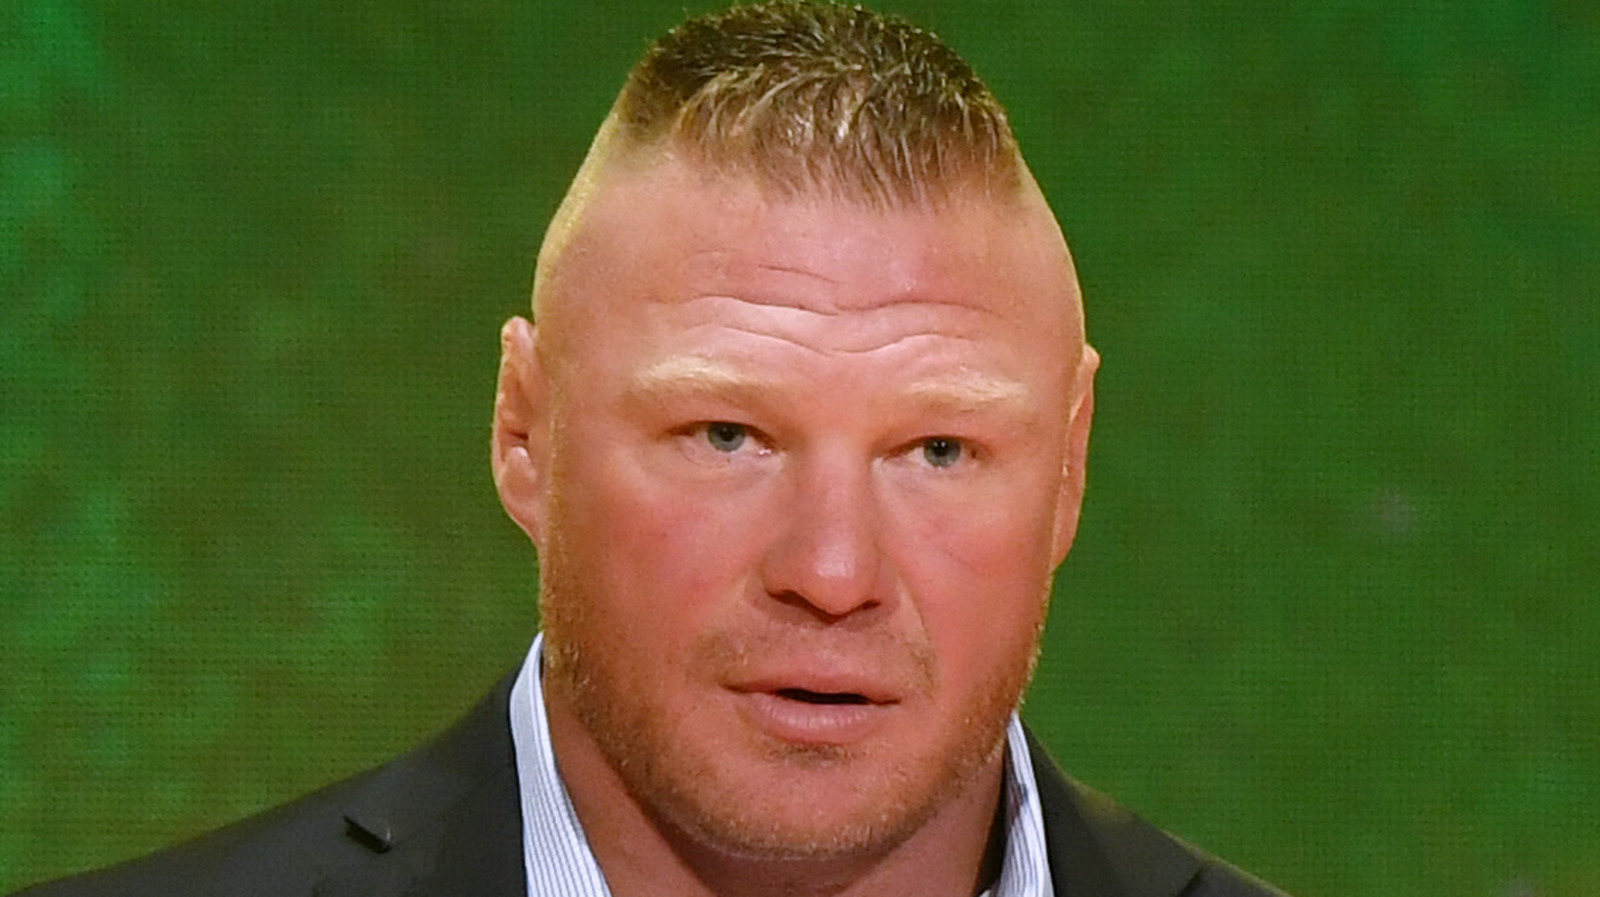 El miembro del Salón de la Fama de WWE comenta sobre 'Sweetheart' Brock Lesnar